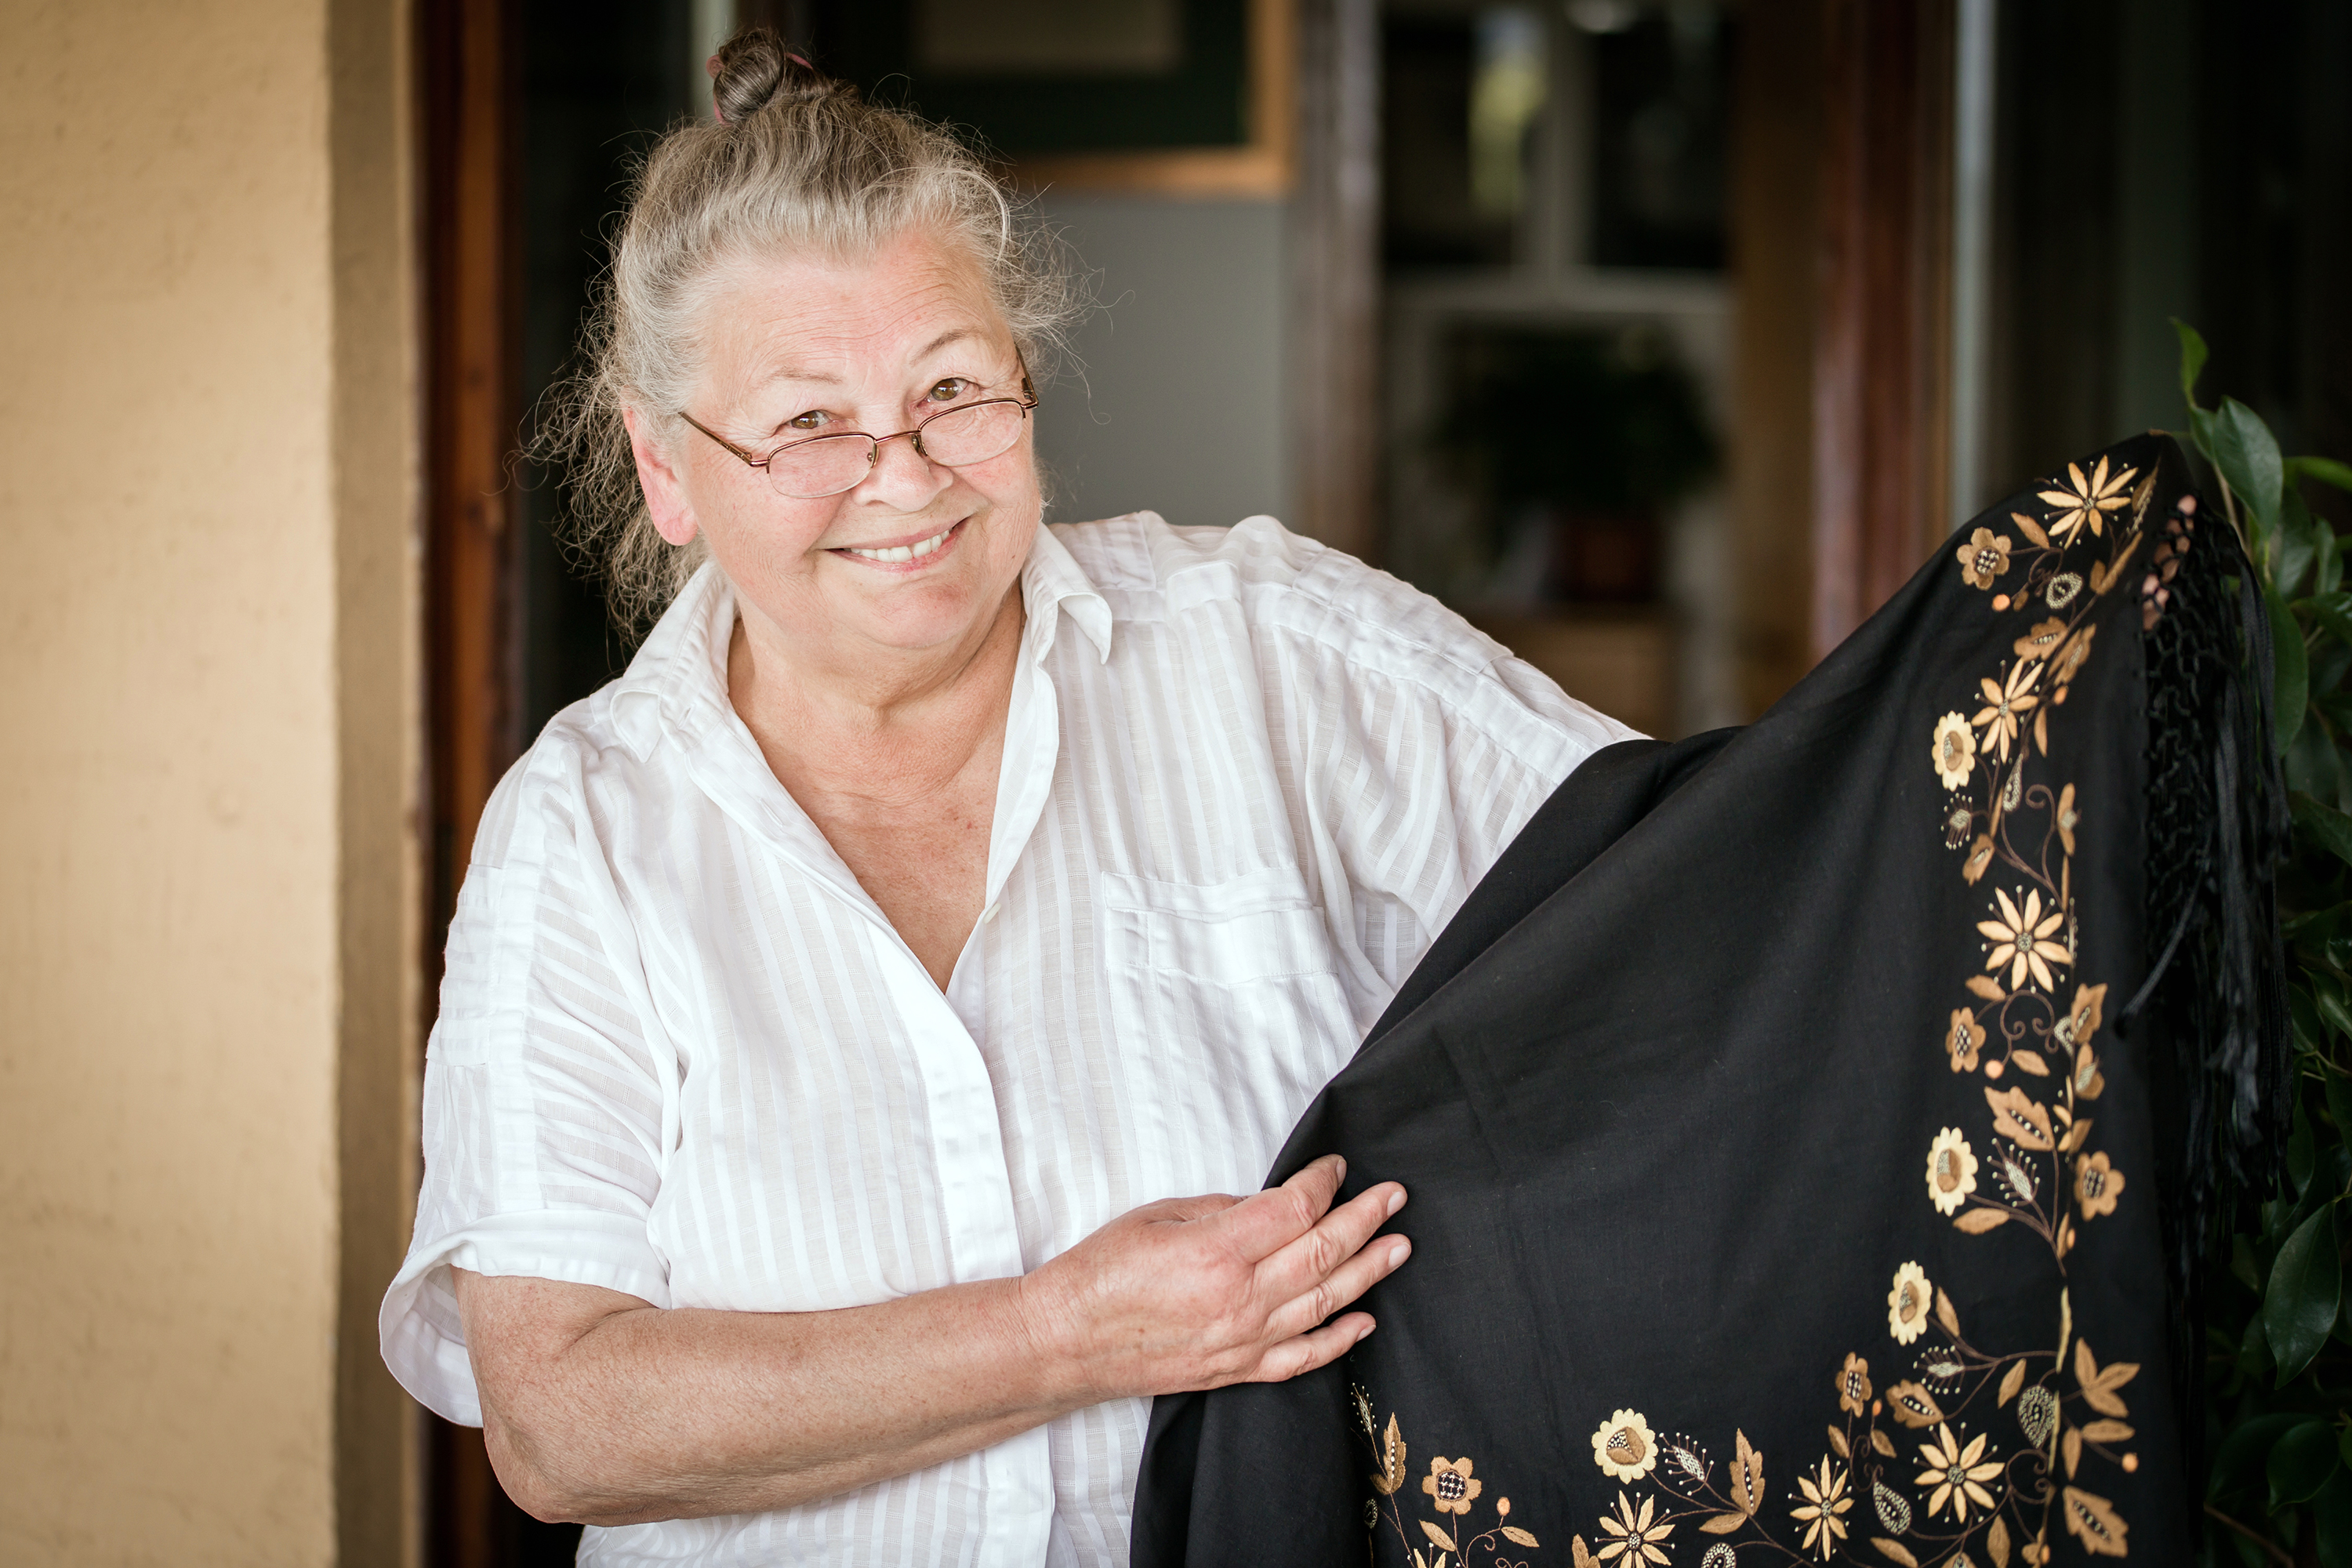 Czarna chusta wykonana haftem kaszubskim, szkoła tucholska.